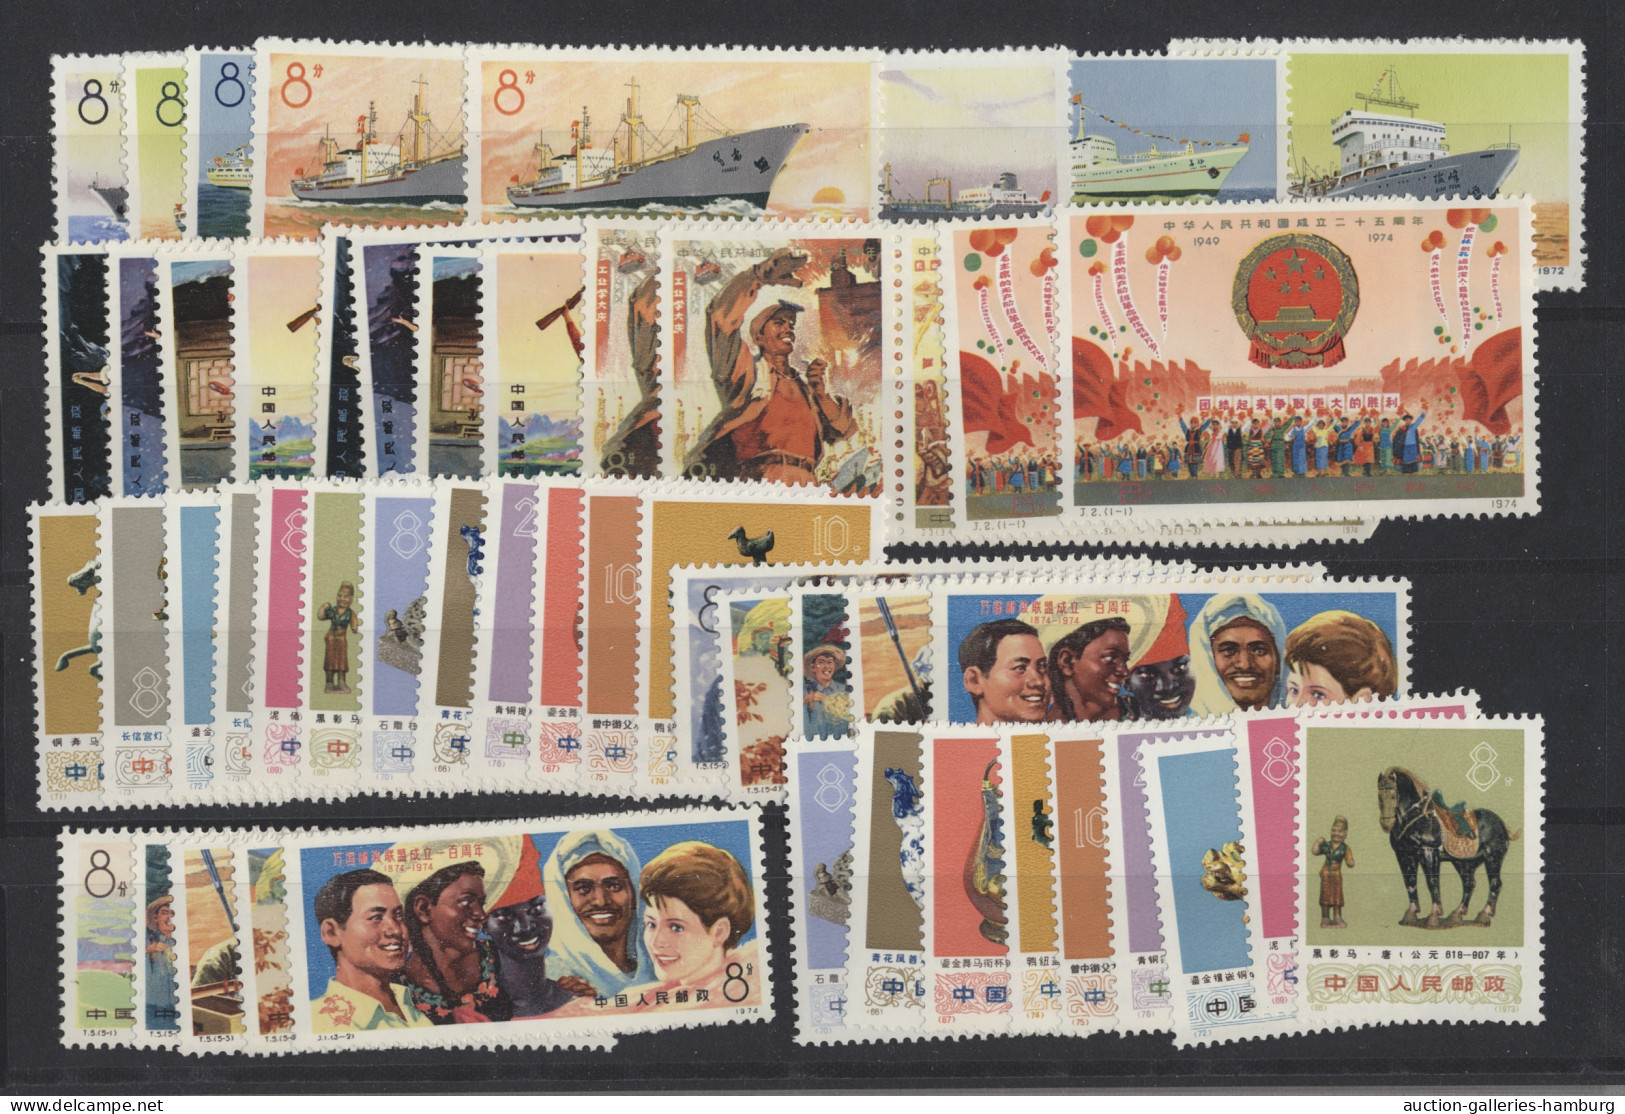 China (PRC): 1950-1975, kompakte Partie aus Sammlungsteilen bzw. Steckkarten mit